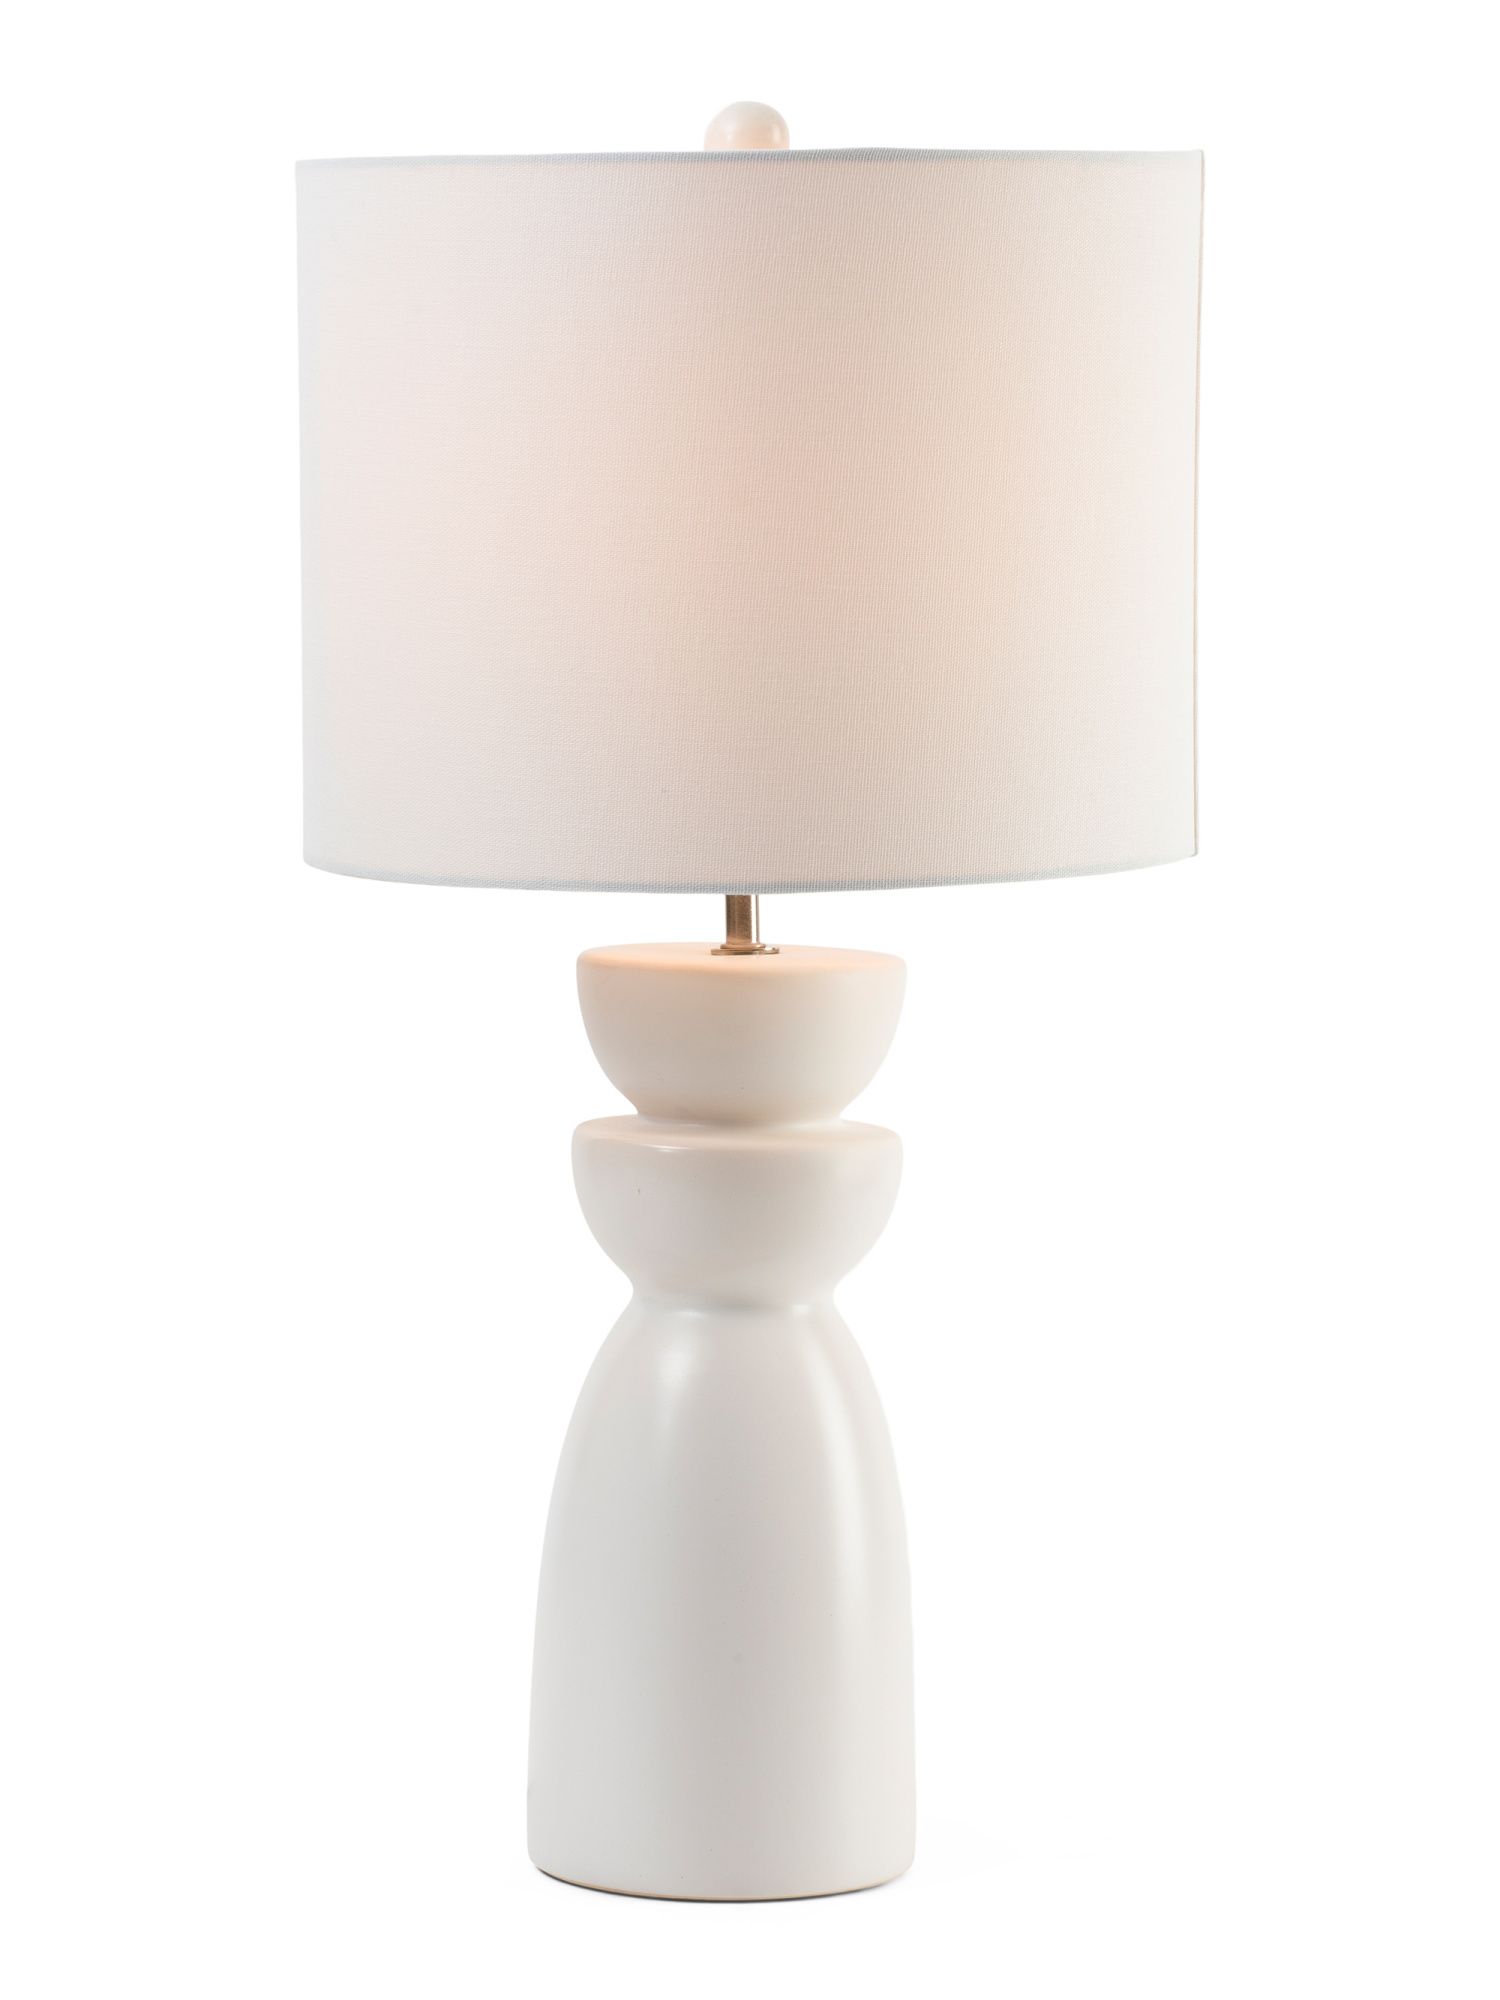 26in Modern Ceramic Table Lamp | Bedroom | Marshalls | Marshalls